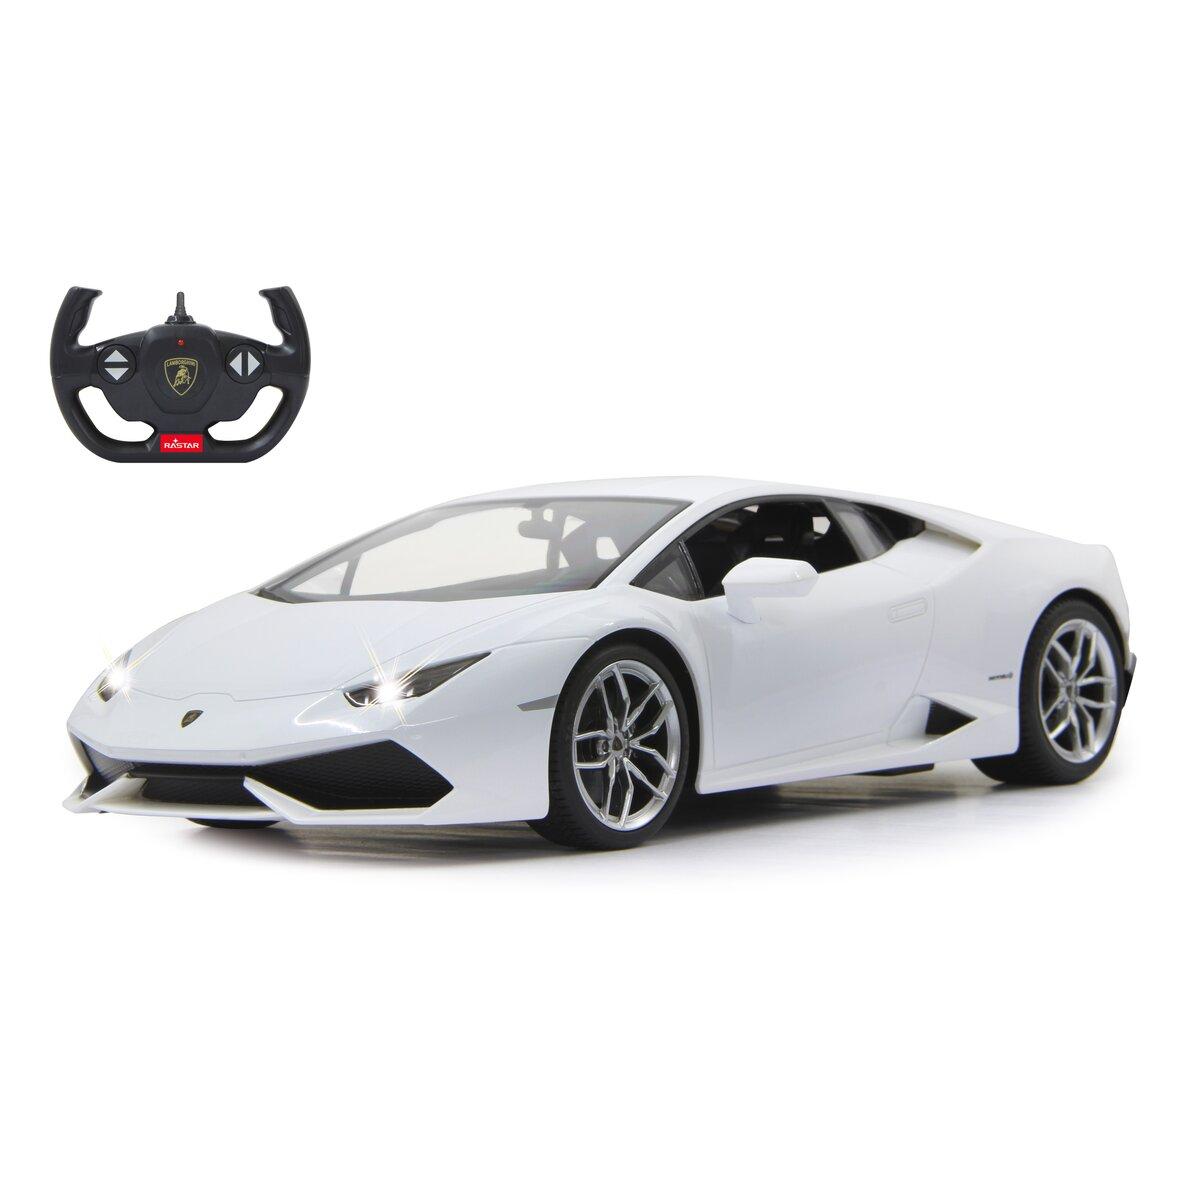 Voiture télécommandée électrique Lamborghini RC pour enfants et adultes,  modèle 1:14, voiture de course sportive